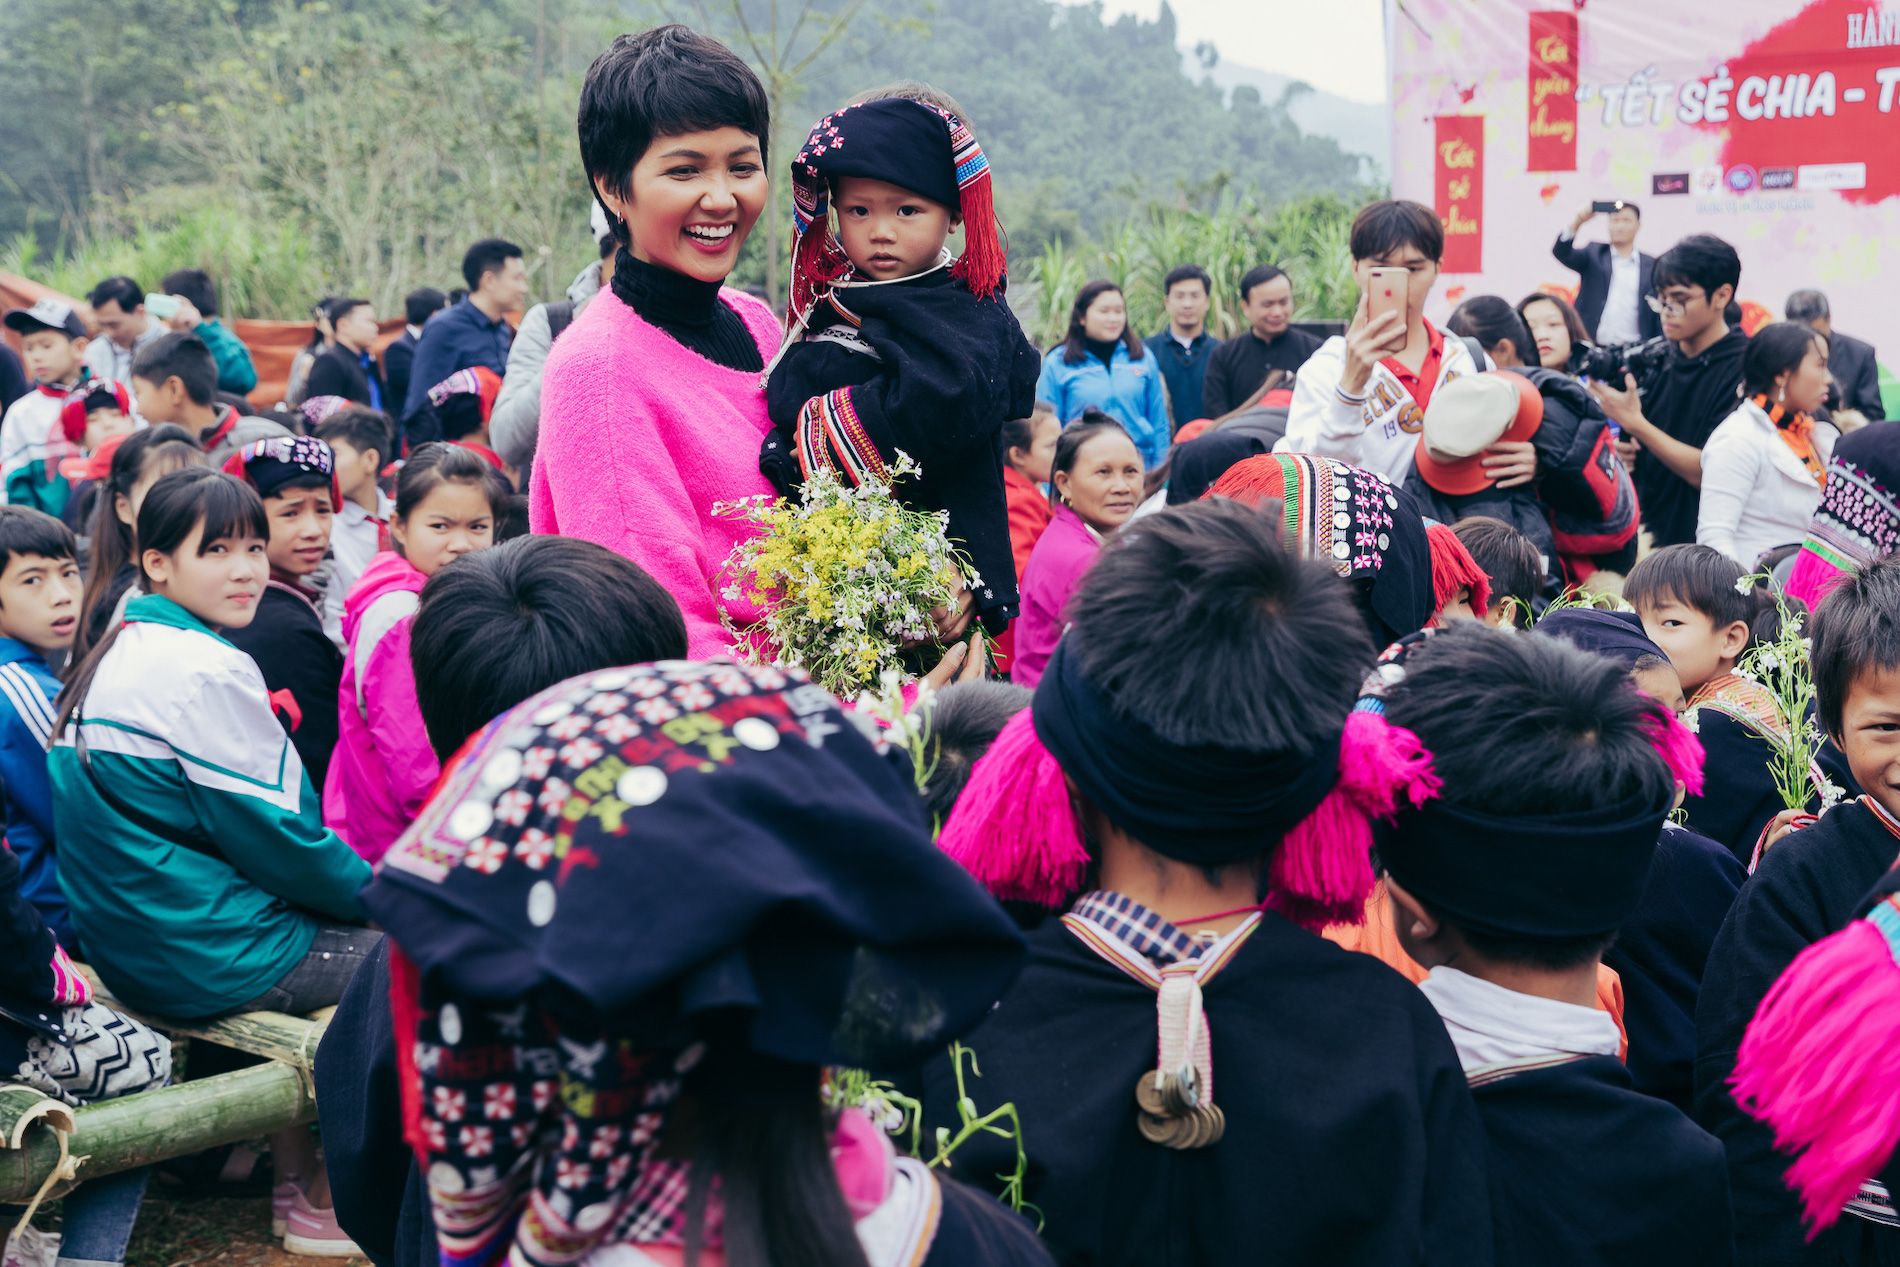 Hoa hậu H’hen Niê hưởng ứng nhiệt tình giải đi bộ trực tuyến gây quỹ vì trẻ em